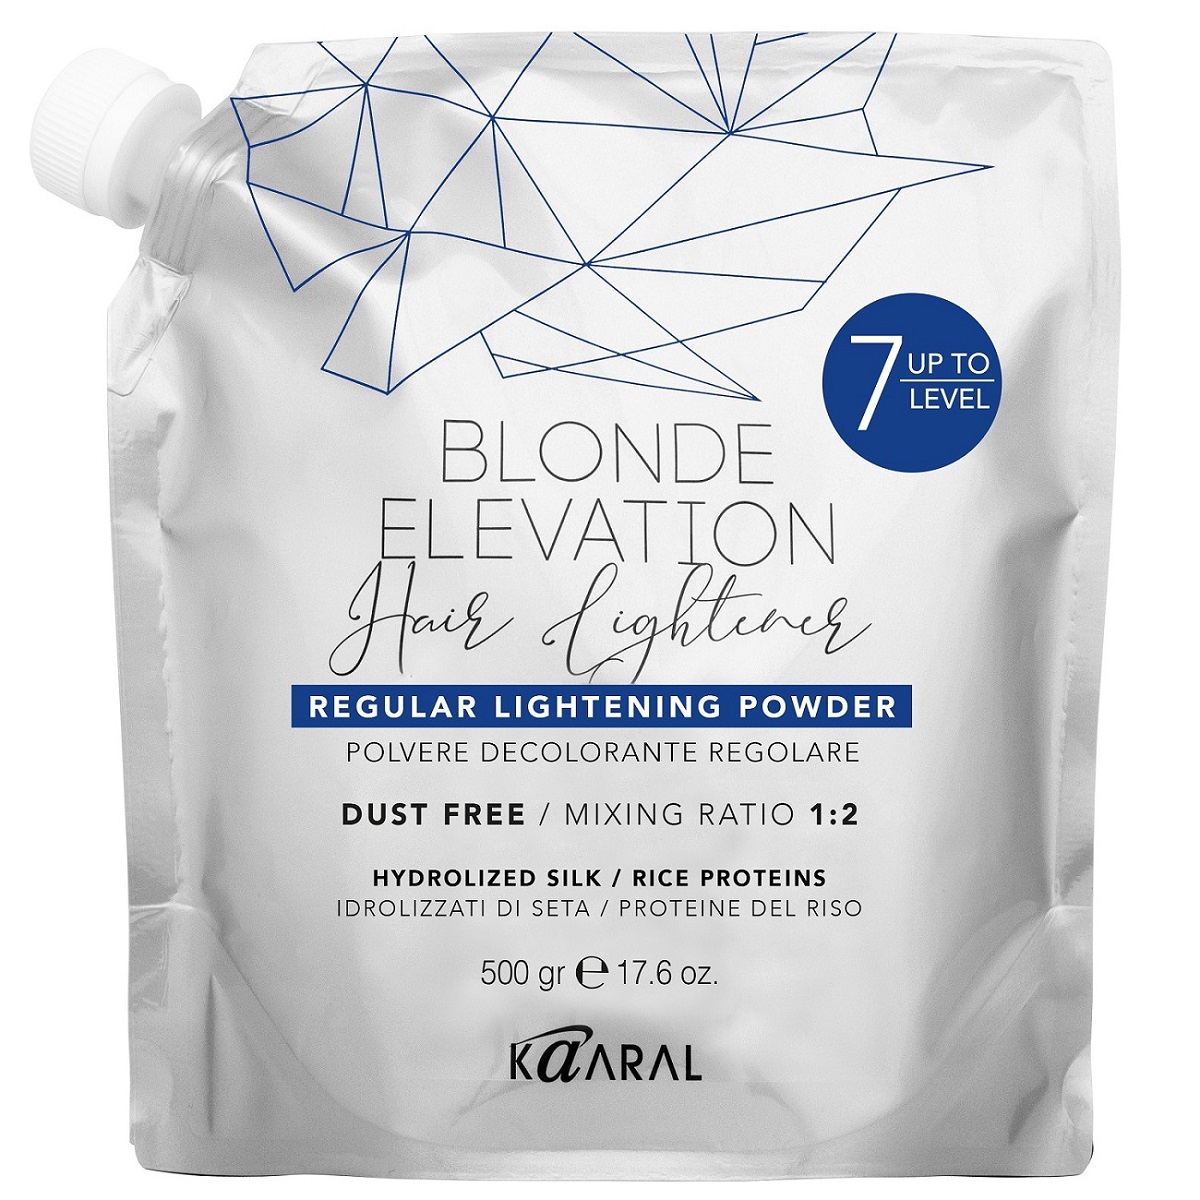 Kaaral Обычная осветляющая пудра Regular Lightening Powder, 500 г (Kaaral, Blonde Elevation) осветлитель для волос до 8 уровней studio 3d 1 шт